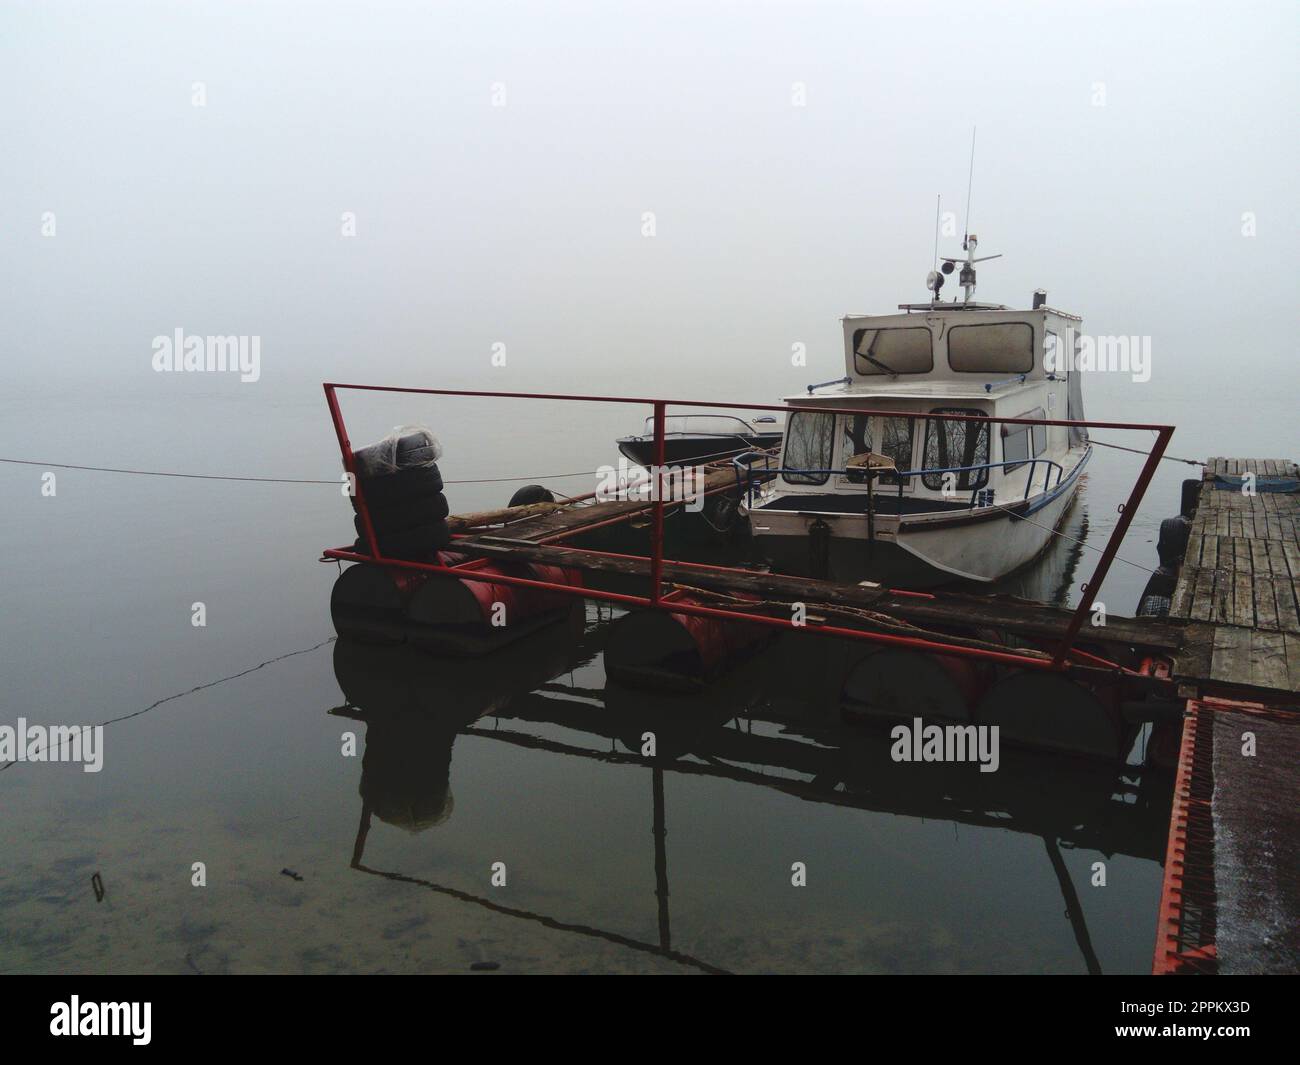 Belgrad, Serbien, 14. Januar 2020 Weißes Boot am Pier, Abfahrt für den Winter. Nebiges Wetter an einem wolkigen Januar-Tag. Reflexion im Fluss. Ein Haus zum Schutz vor dem Wetter Stockfoto